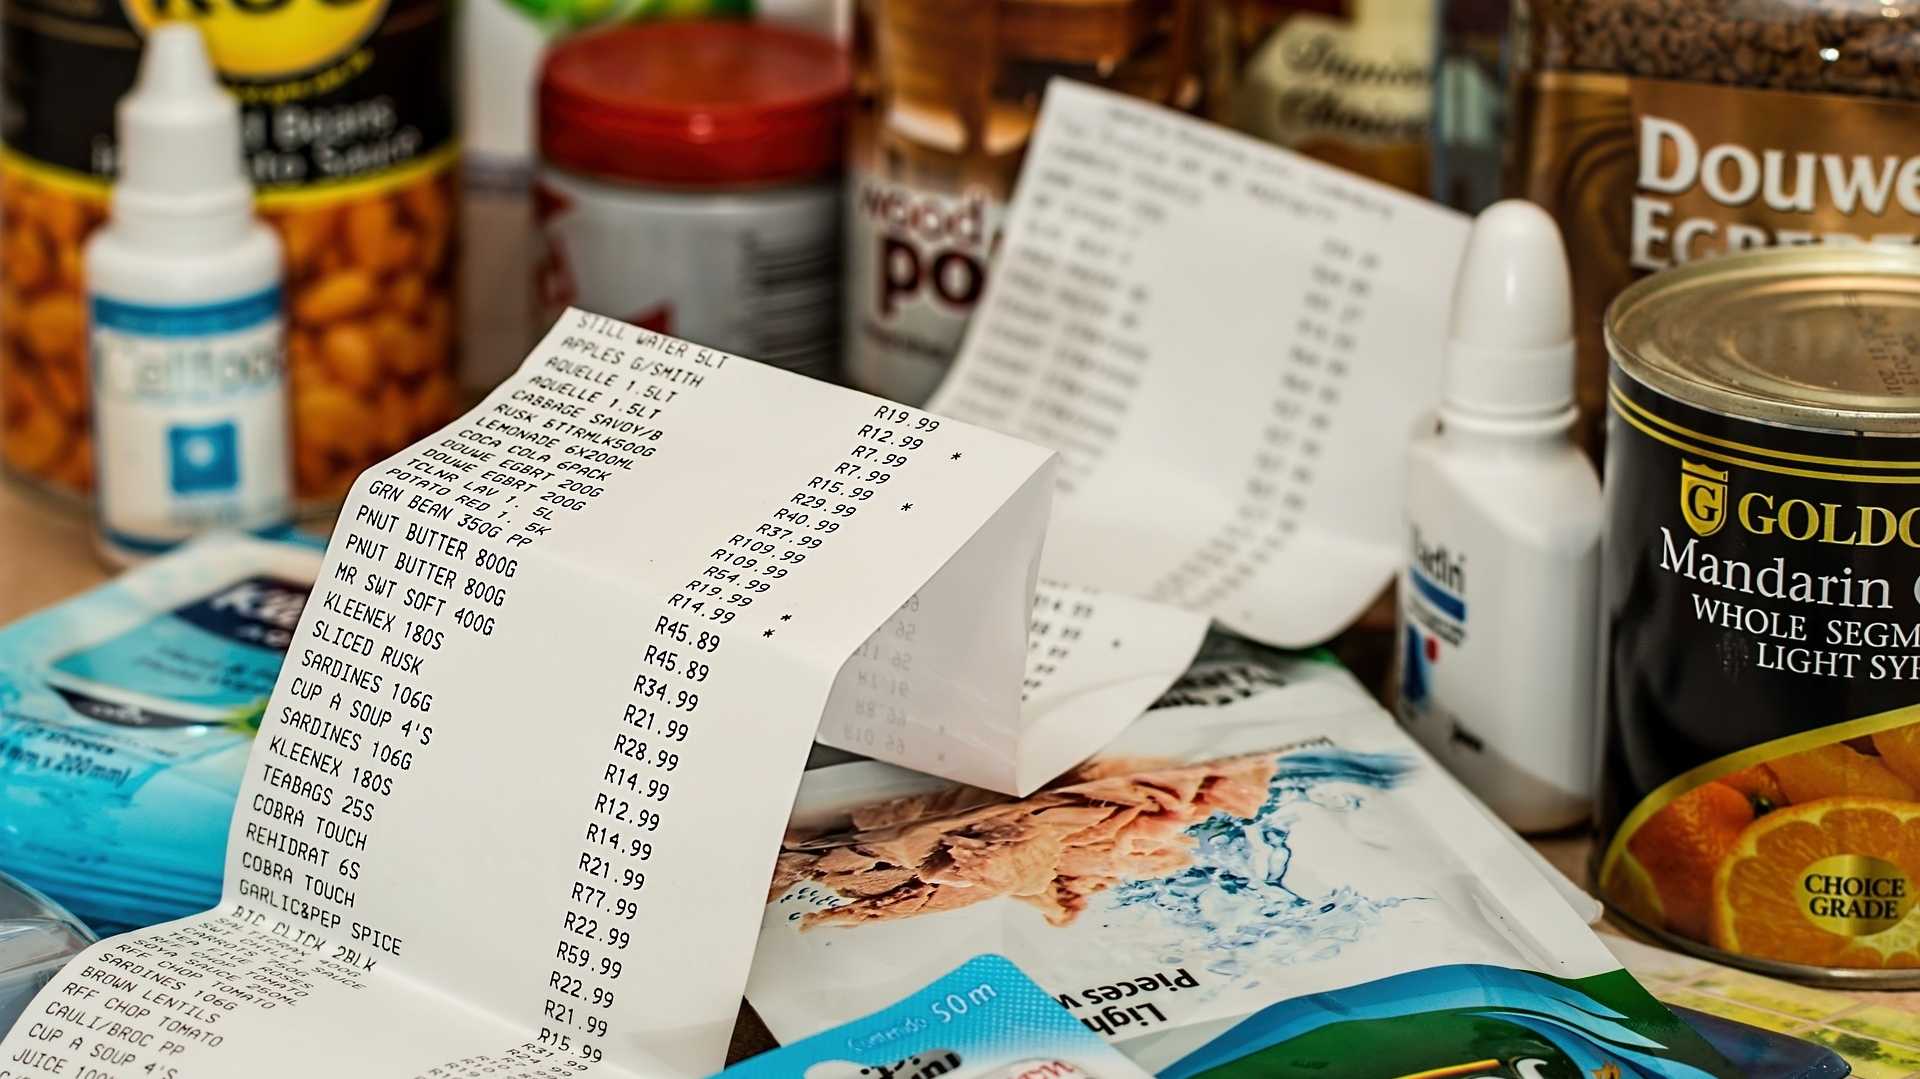 Warenkorb mit Kassenzettel - Symbol für fallende Erzeugerpreise und deren Einfluss auf Verbraucherpreise